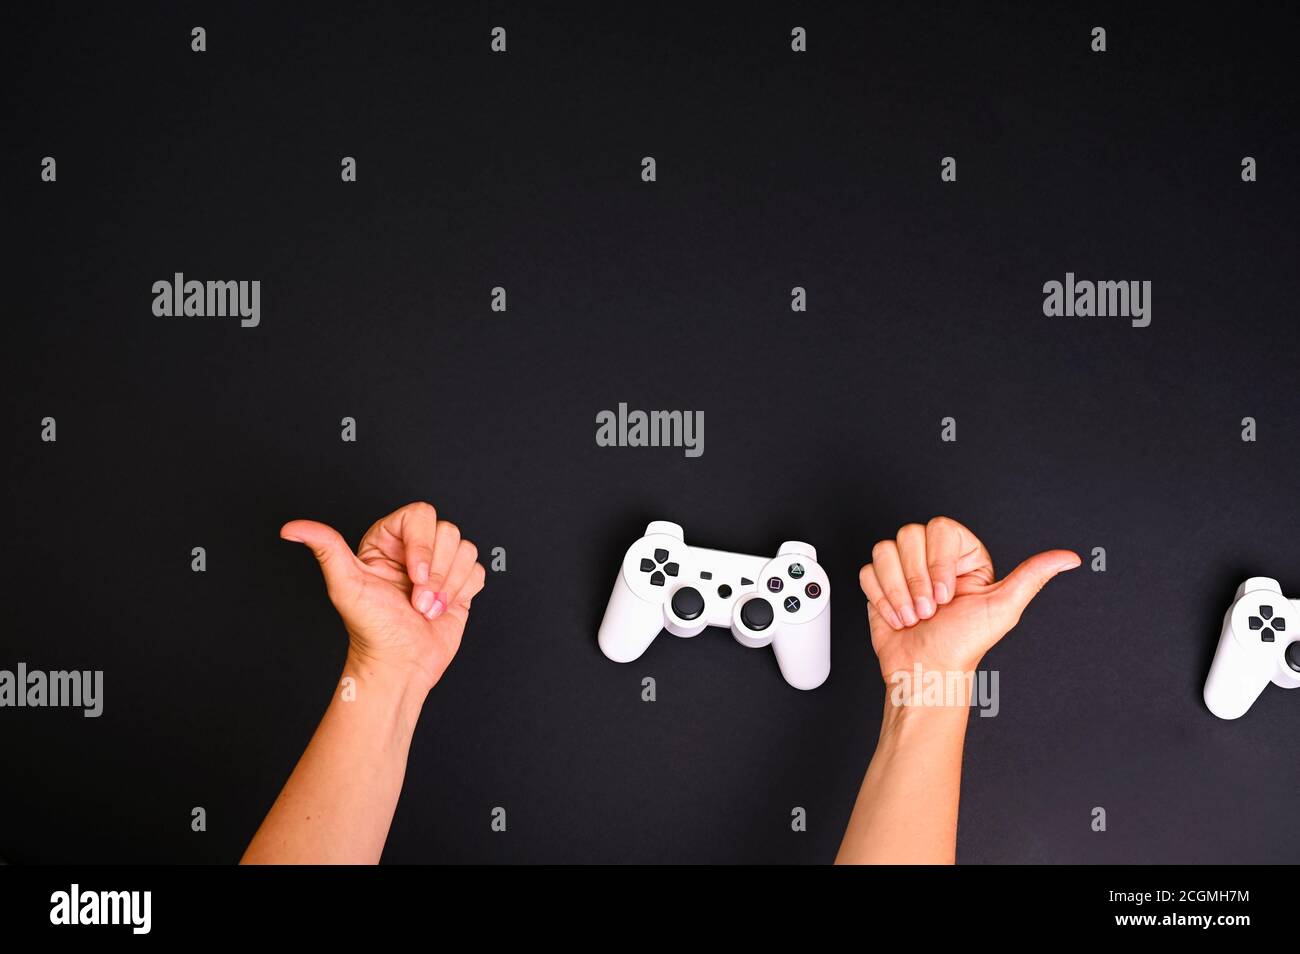 Concours de jeux informatiques. Concept de jeu. Joysticks blancs sur fond noir. Manette de jeu. Les mains dans le cadre jouent sur une console d'ordinateur. Haute qualité . Copier l'espace . Ci-dessus Banque D'Images